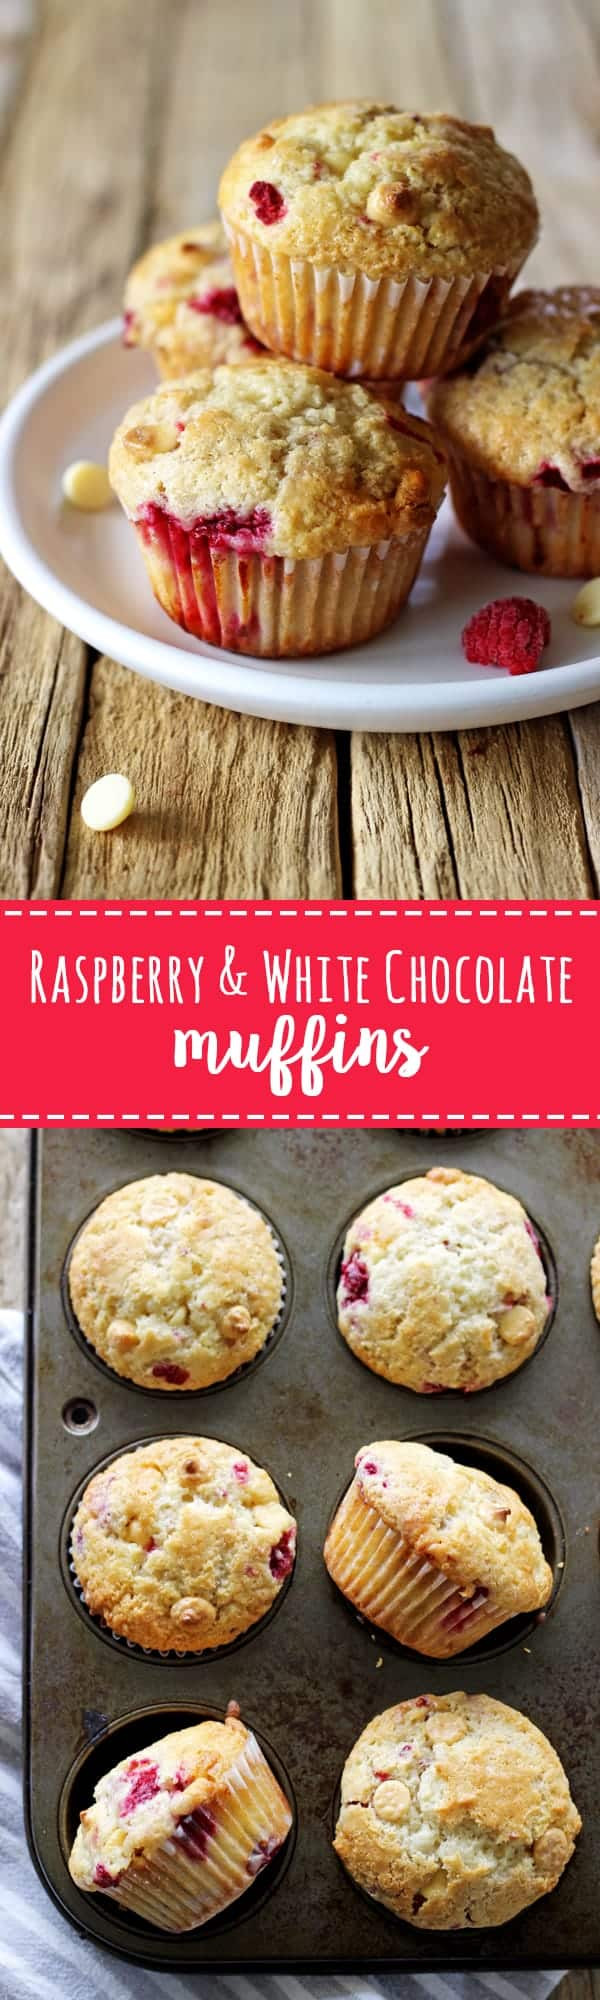 Raspberry White Chocolate Muffins
 Raspberry & White Chocolate Muffins